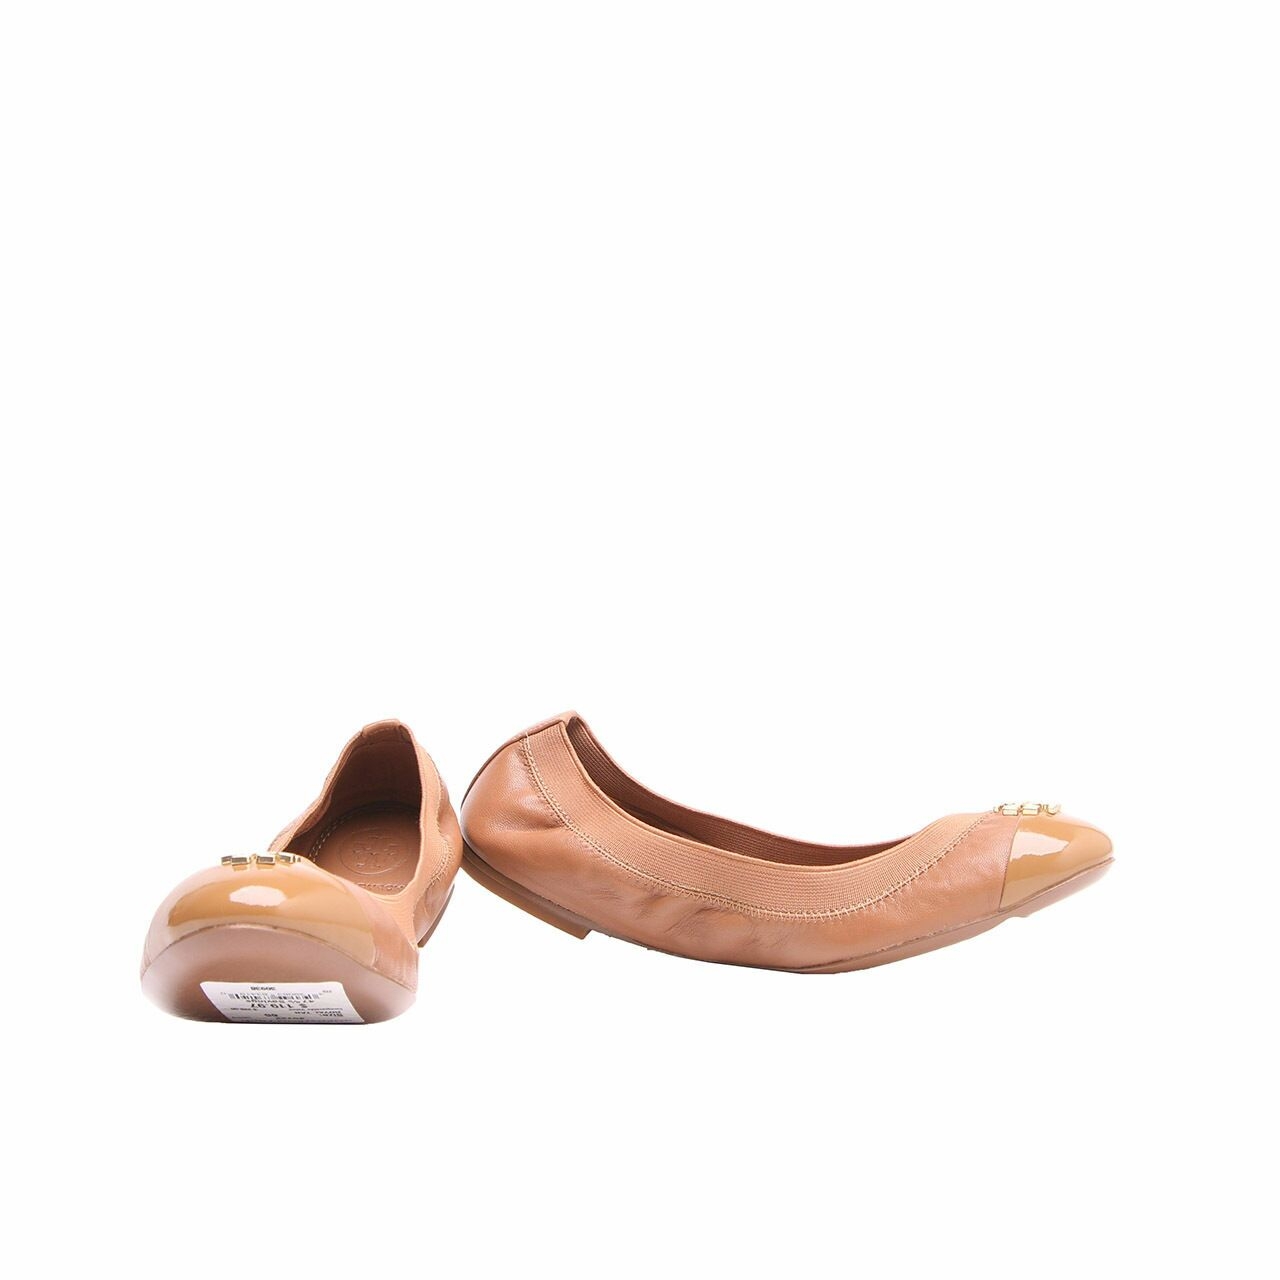 Tory Burch Jolie Brown Ballet Flats Shoes